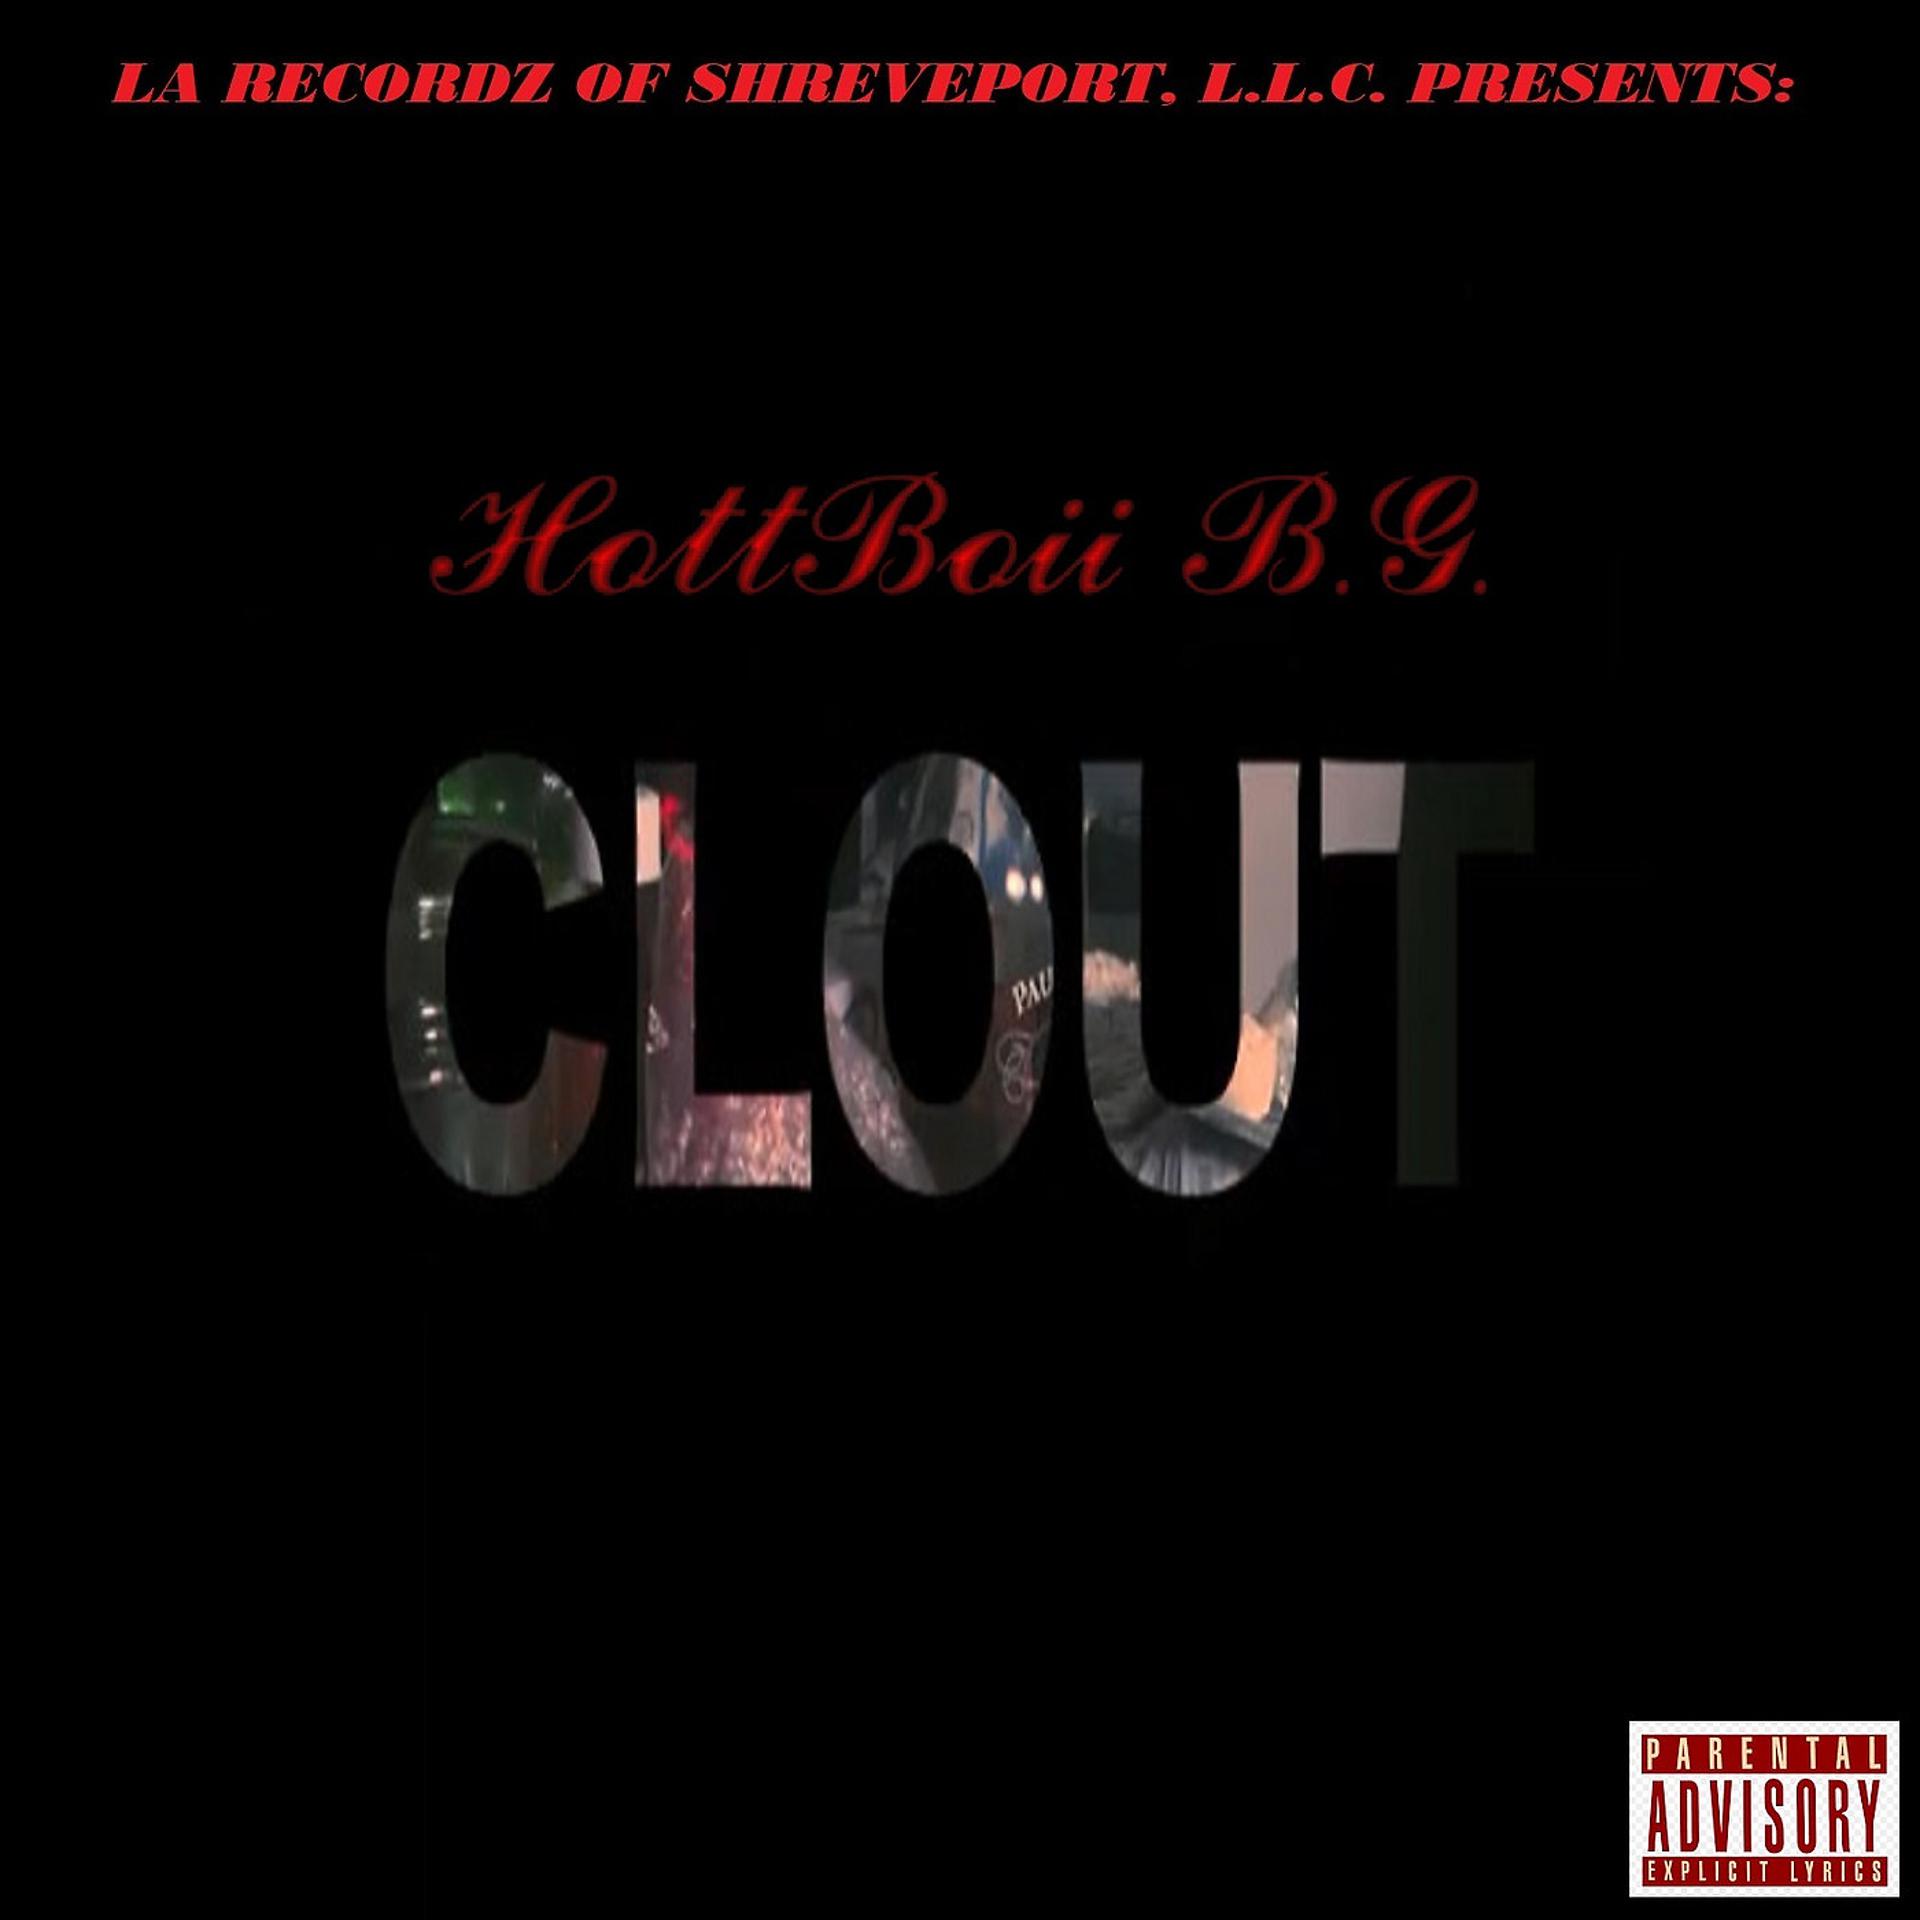 Постер альбома Clout